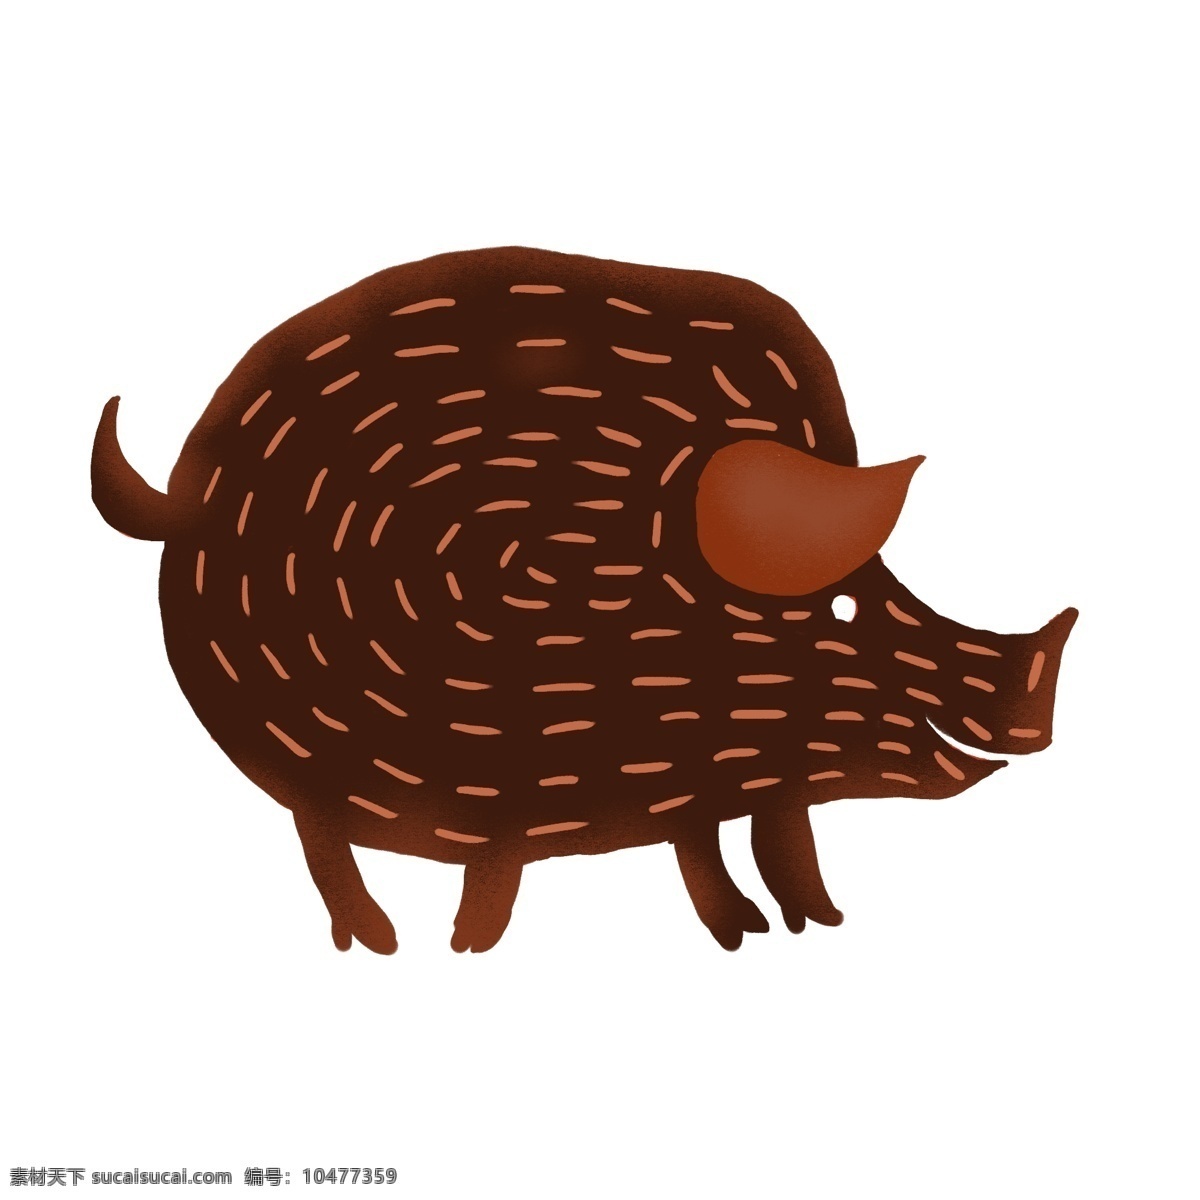 卡通 手绘 猪年 猪 元素 商用 手绘猪 动物 卡通可爱风